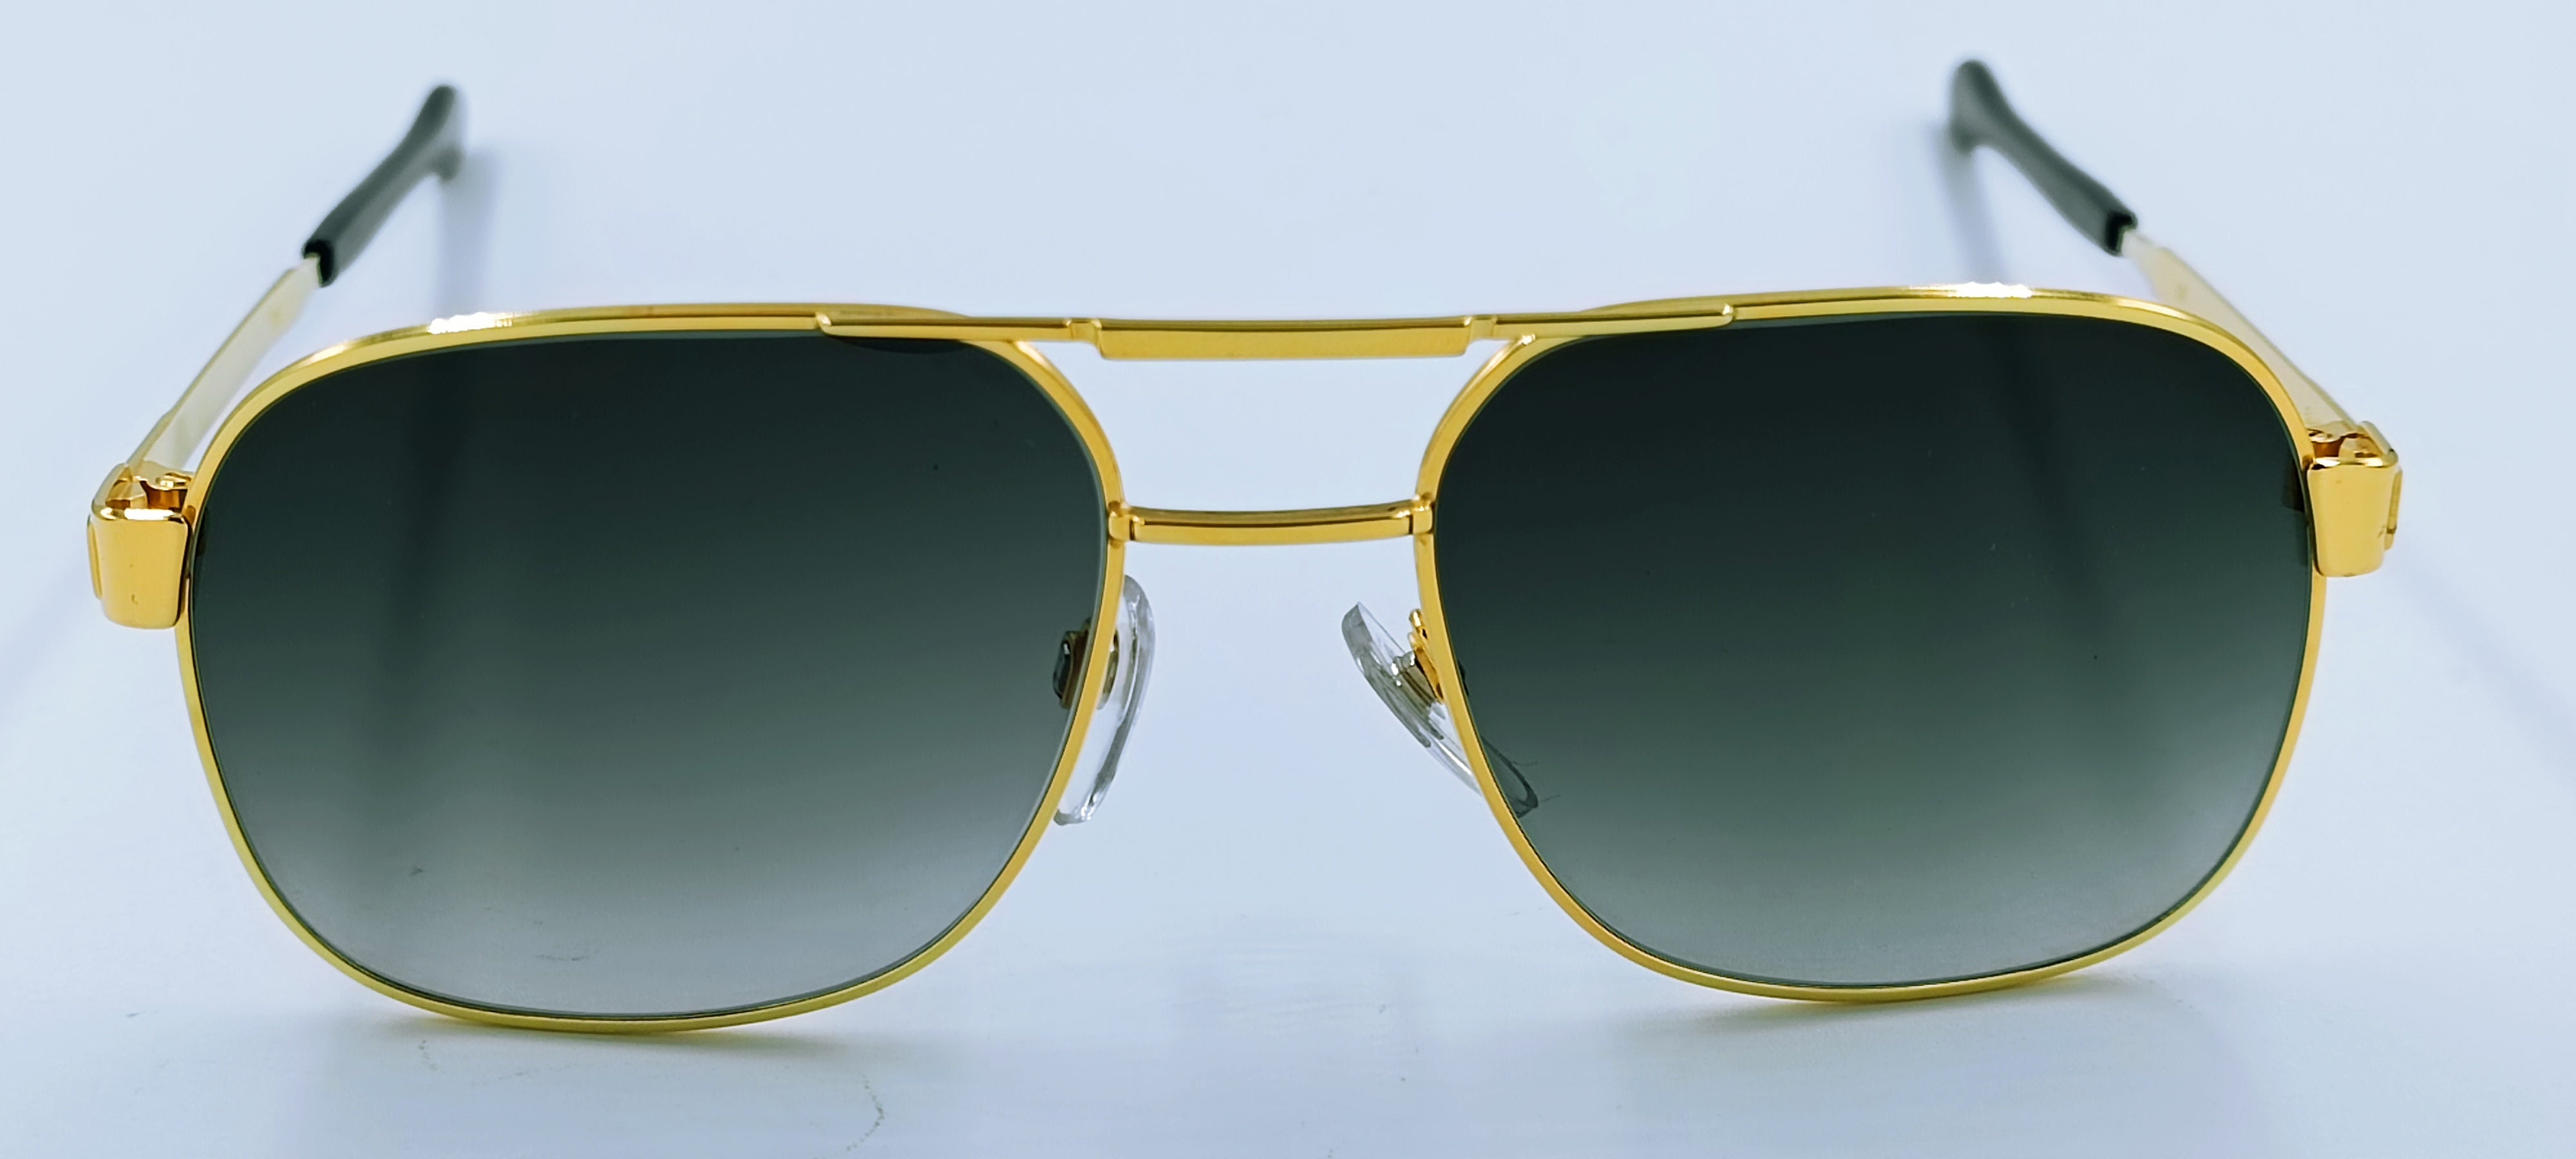 Hilton Exclusive 21 Gold Plated 24kt - Funkykhalou-shop.com Rare Vintage  Sunglasses Lunettes